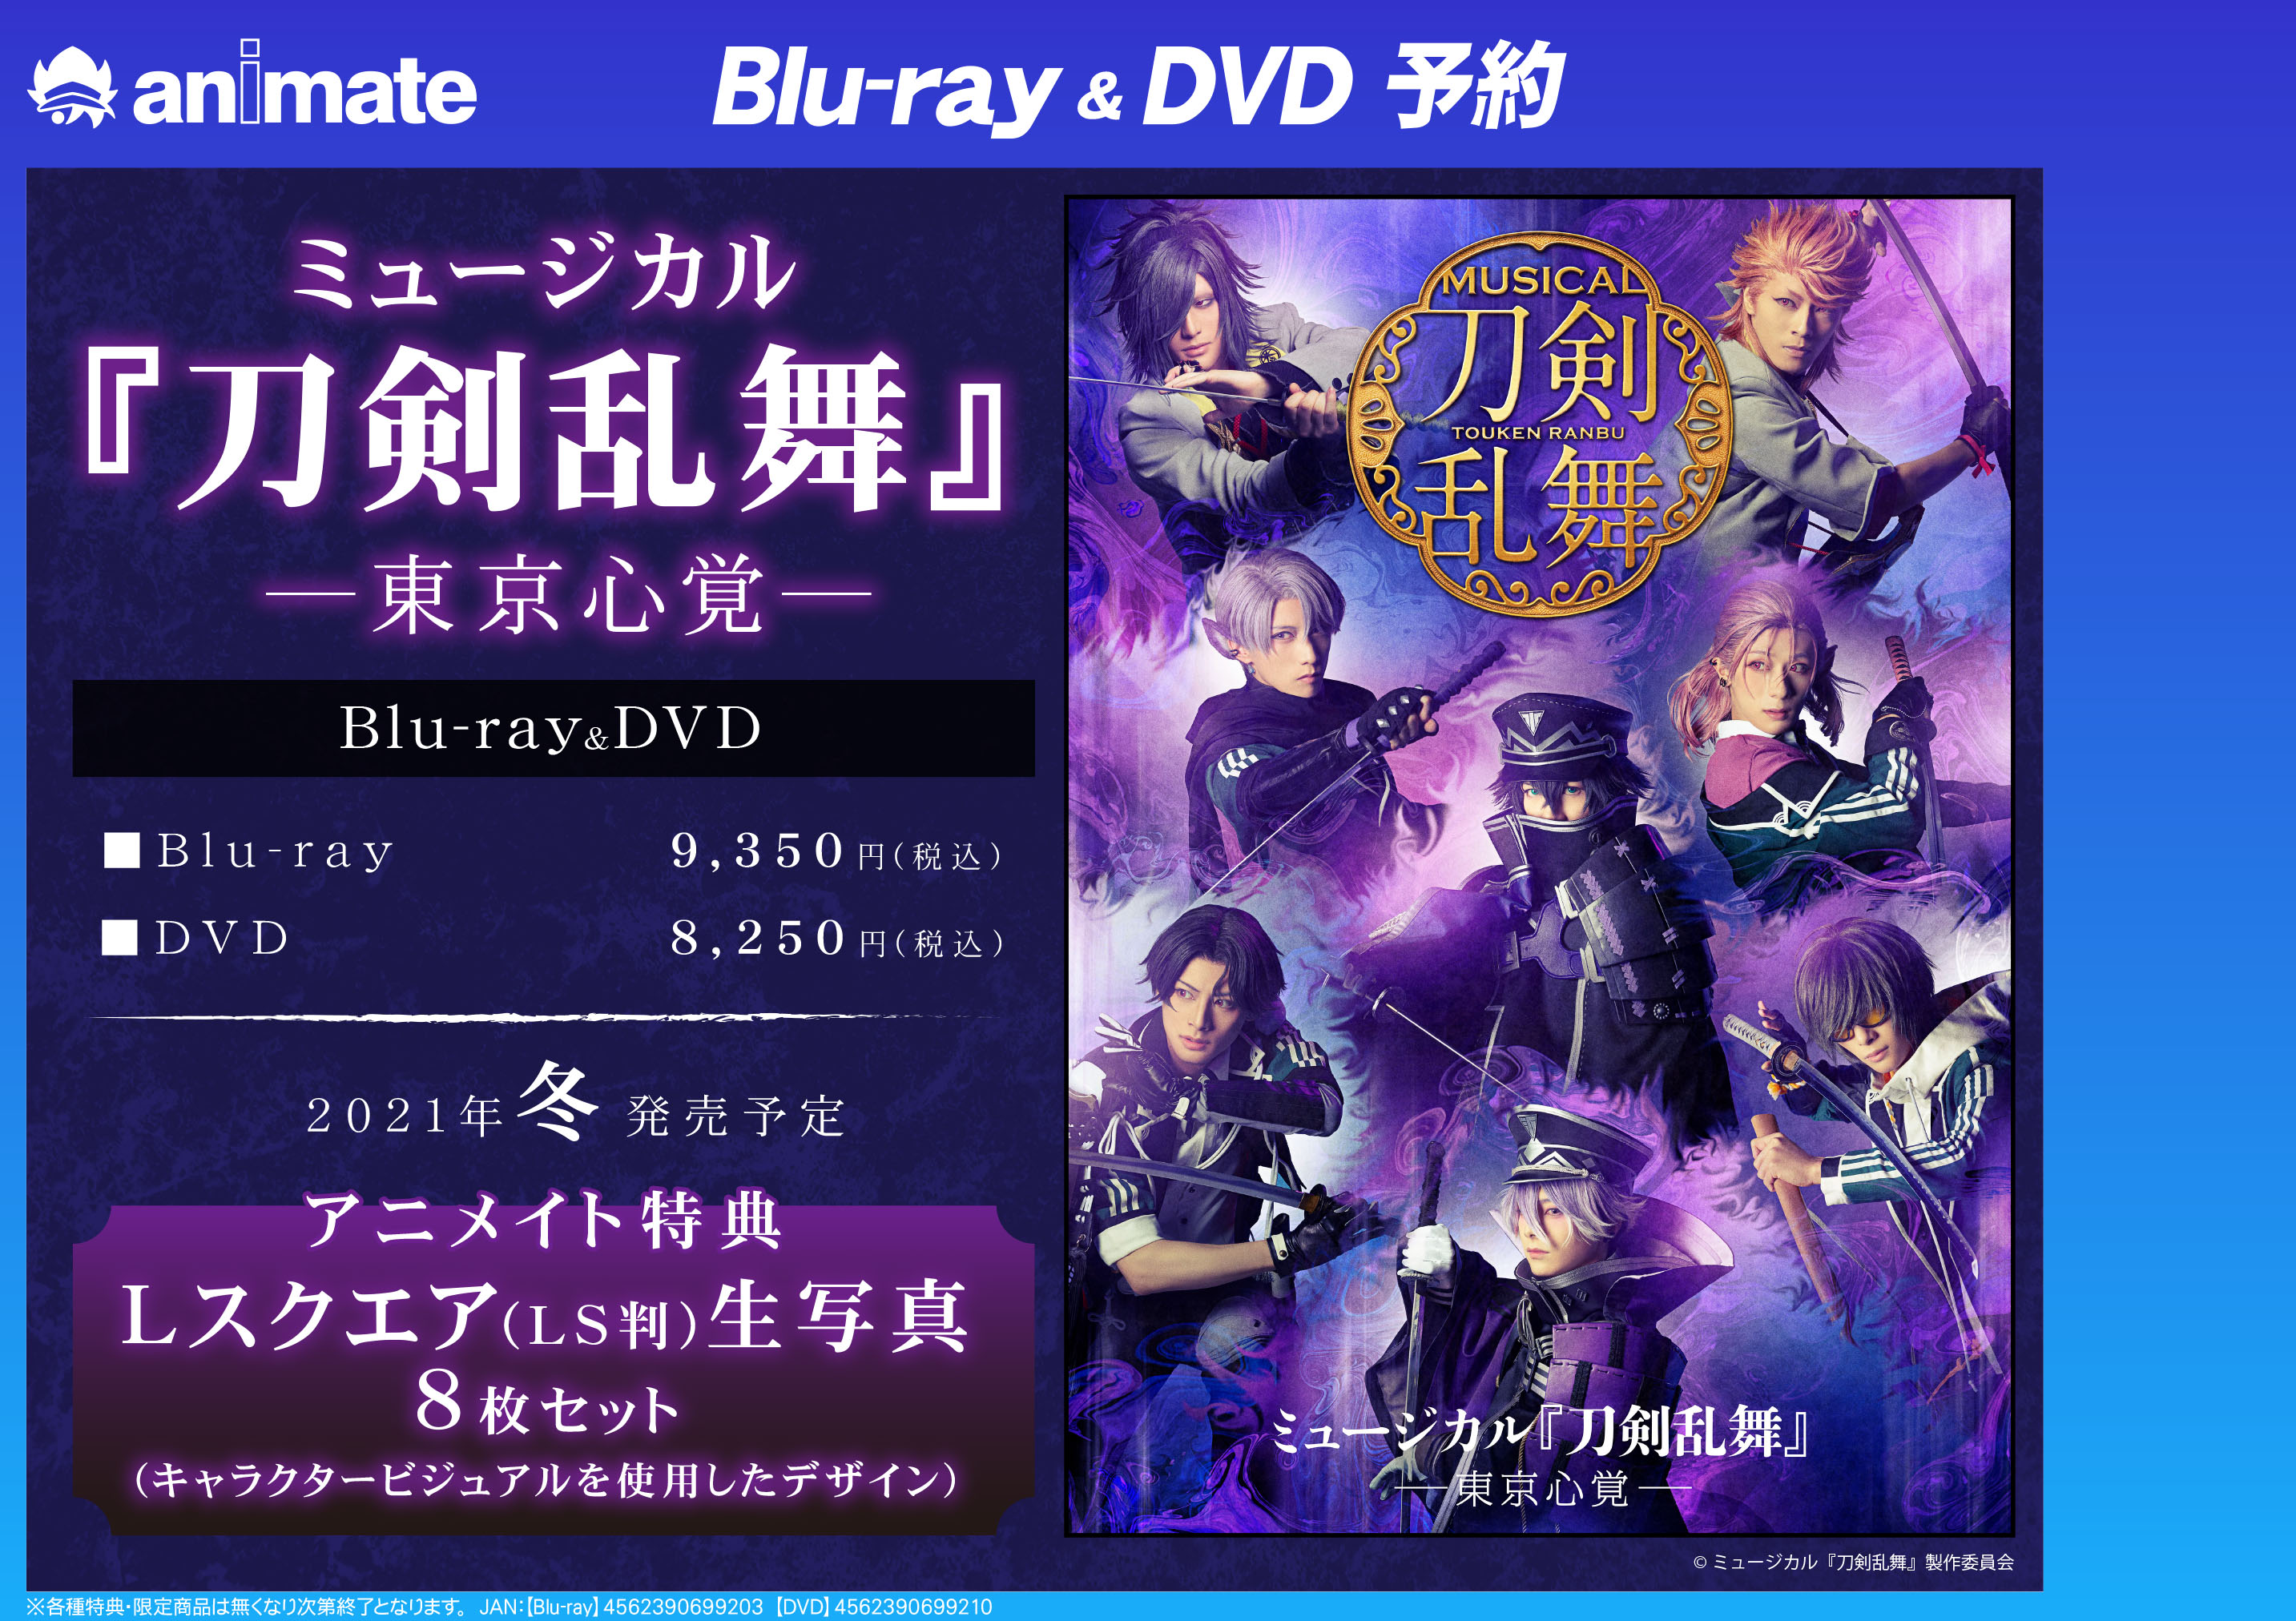 ミュージカル『刀剣乱舞』-東京心覚- DVD